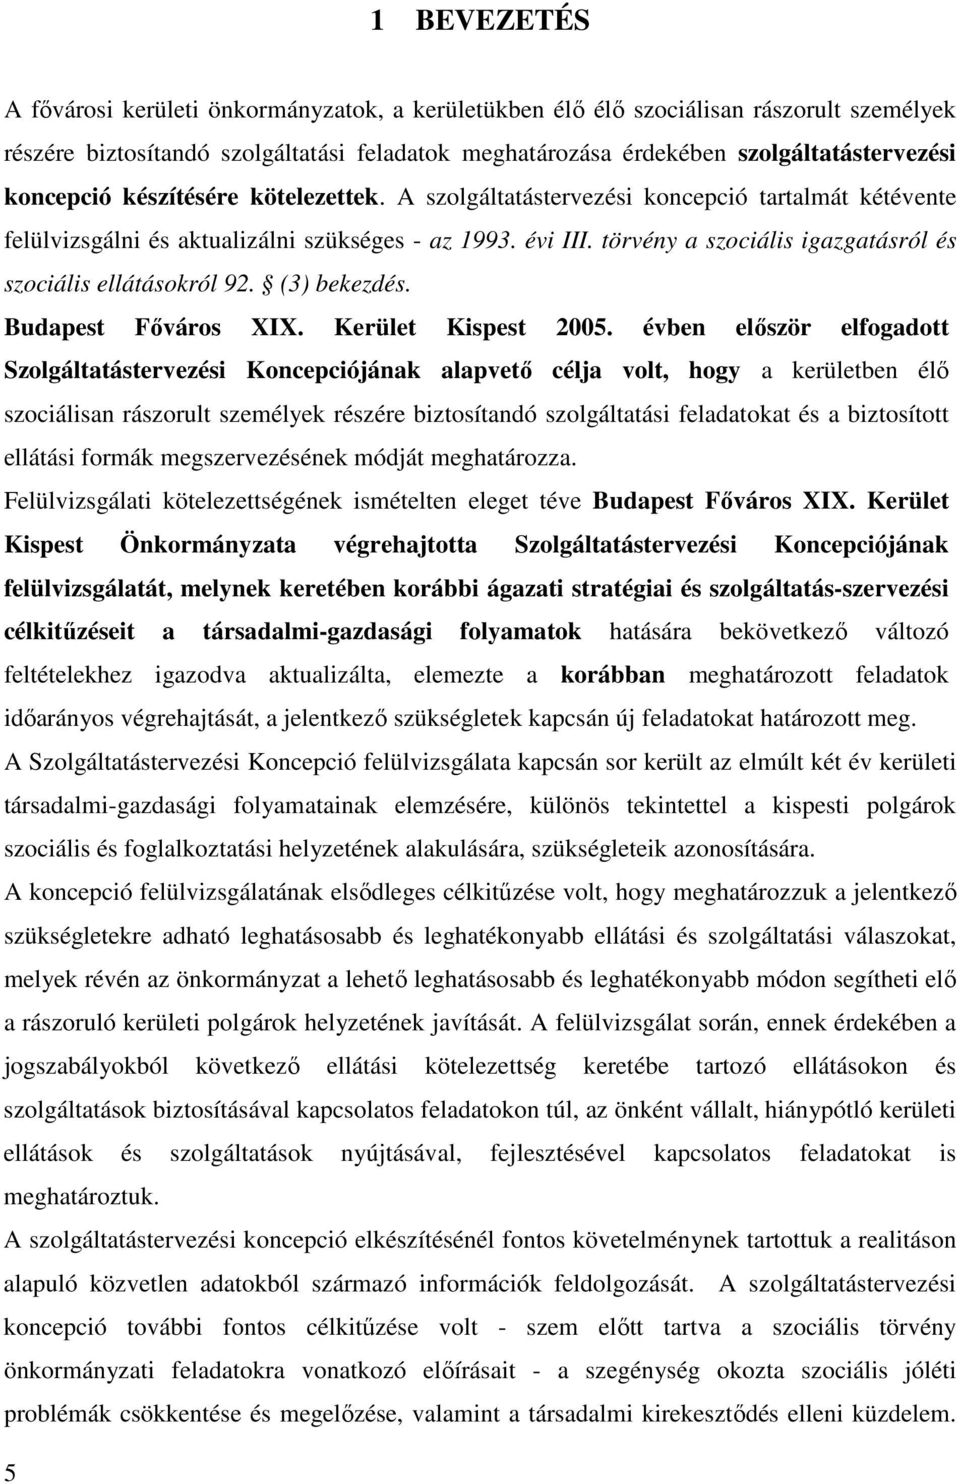 törvény a szociális igazgatásról és szociális ellátásokról 92. (3) bekezdés. Budapest Fıváros XIX. Kerület Kispest 2005.